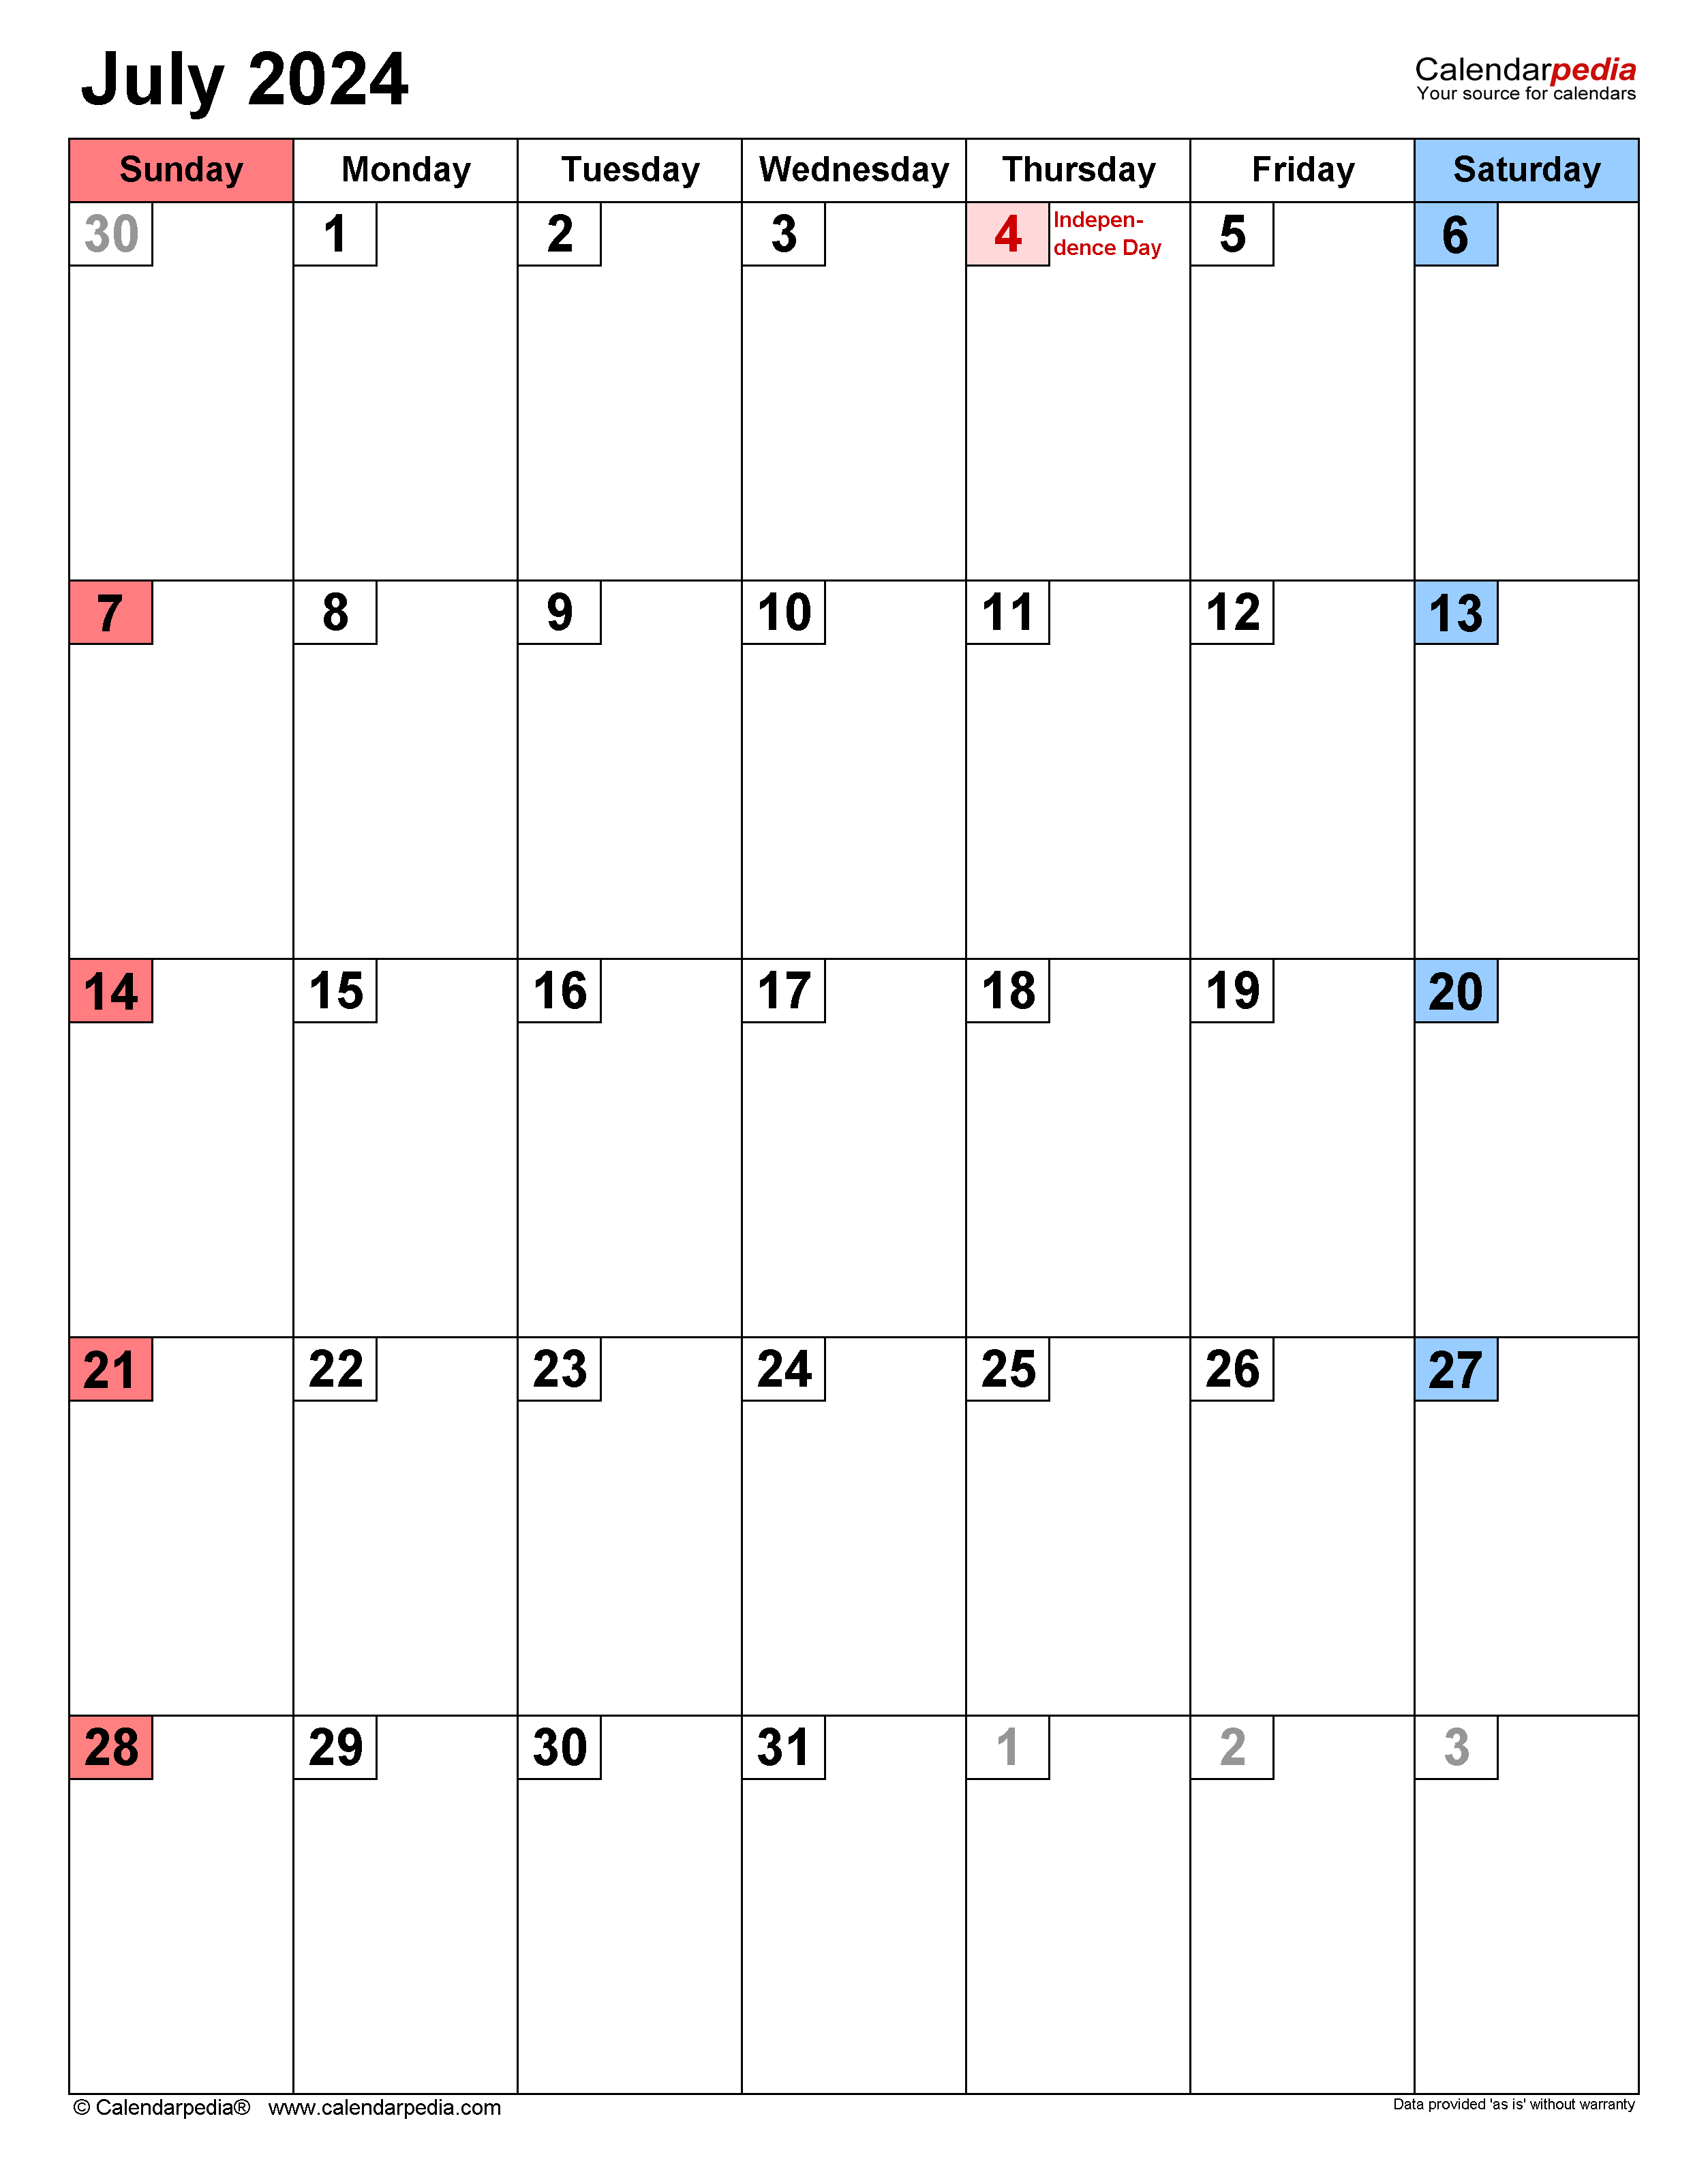 July 2024 Calendar CalendarLabs 2024 Calendar Printable